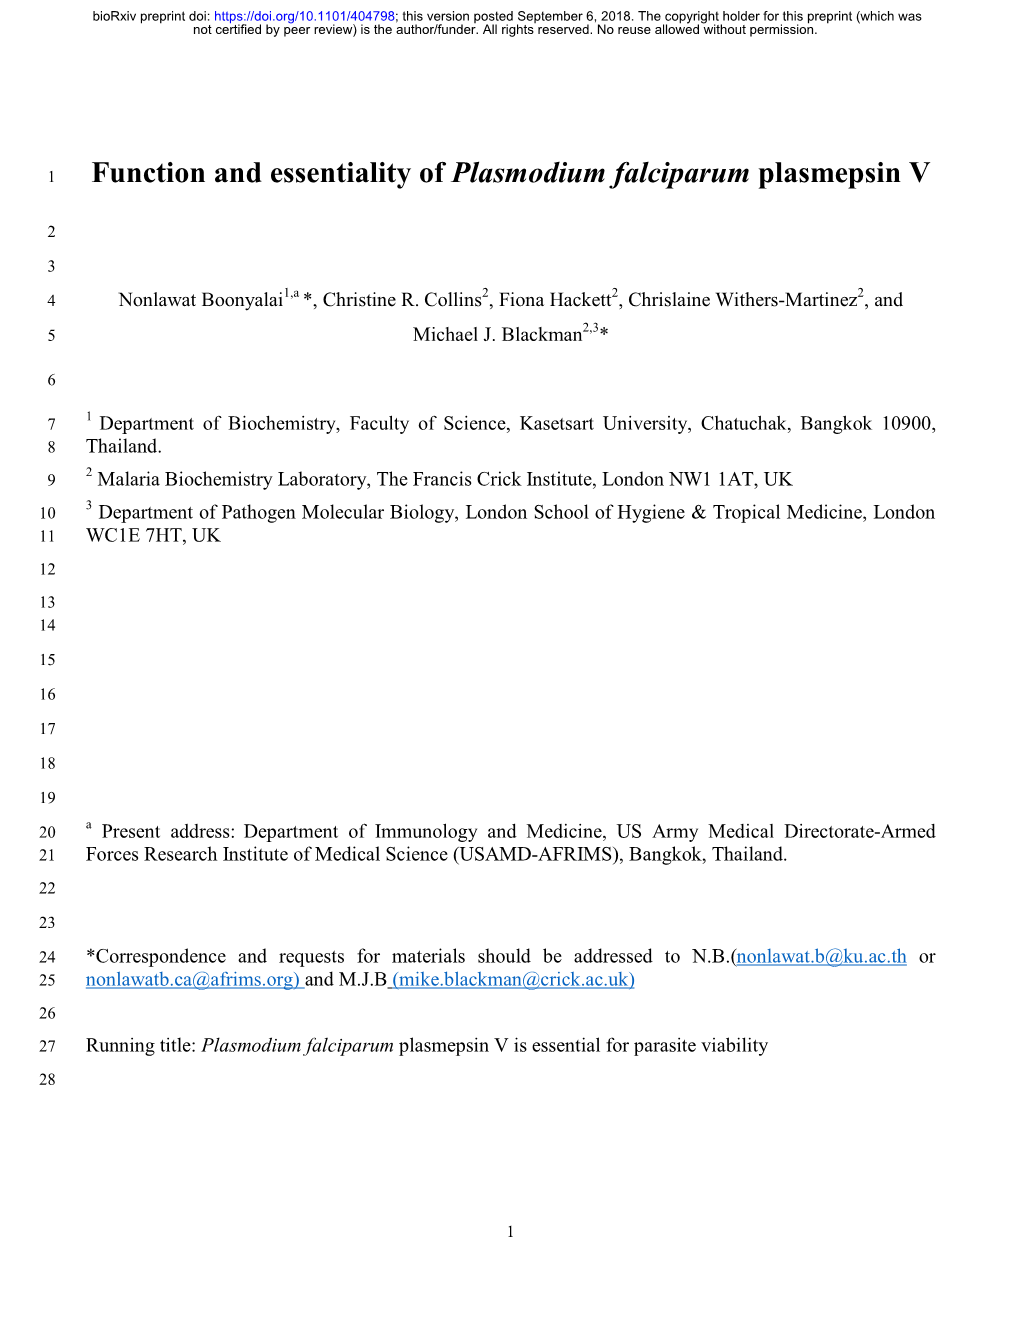 Function and Essentiality of Plasmodium Falciparum Plasmepsin V